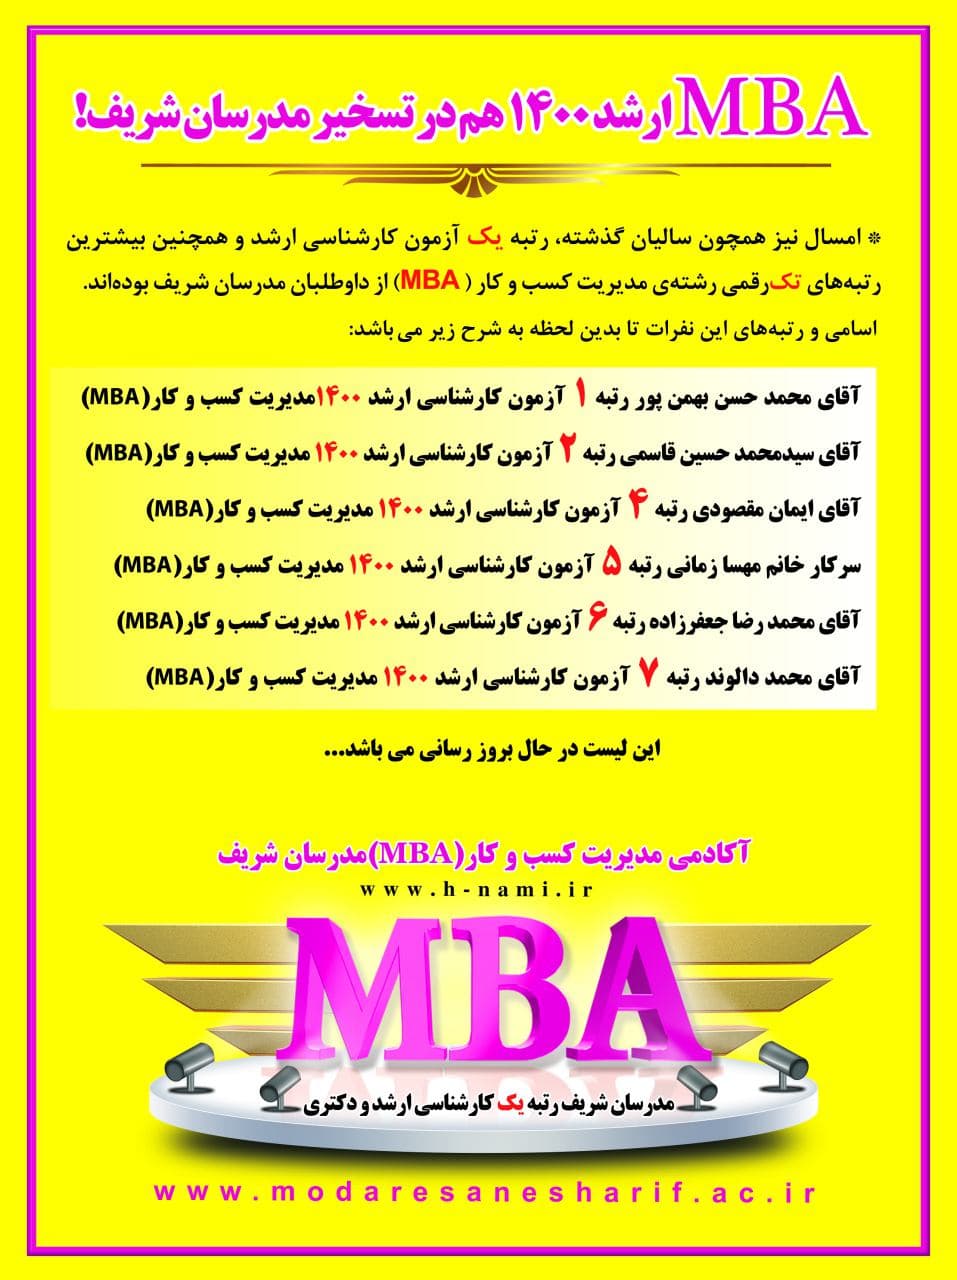 رتبه های برتر رشته مدیریت کسب و کار مدرسان شریف در سال 1400 (MBA)